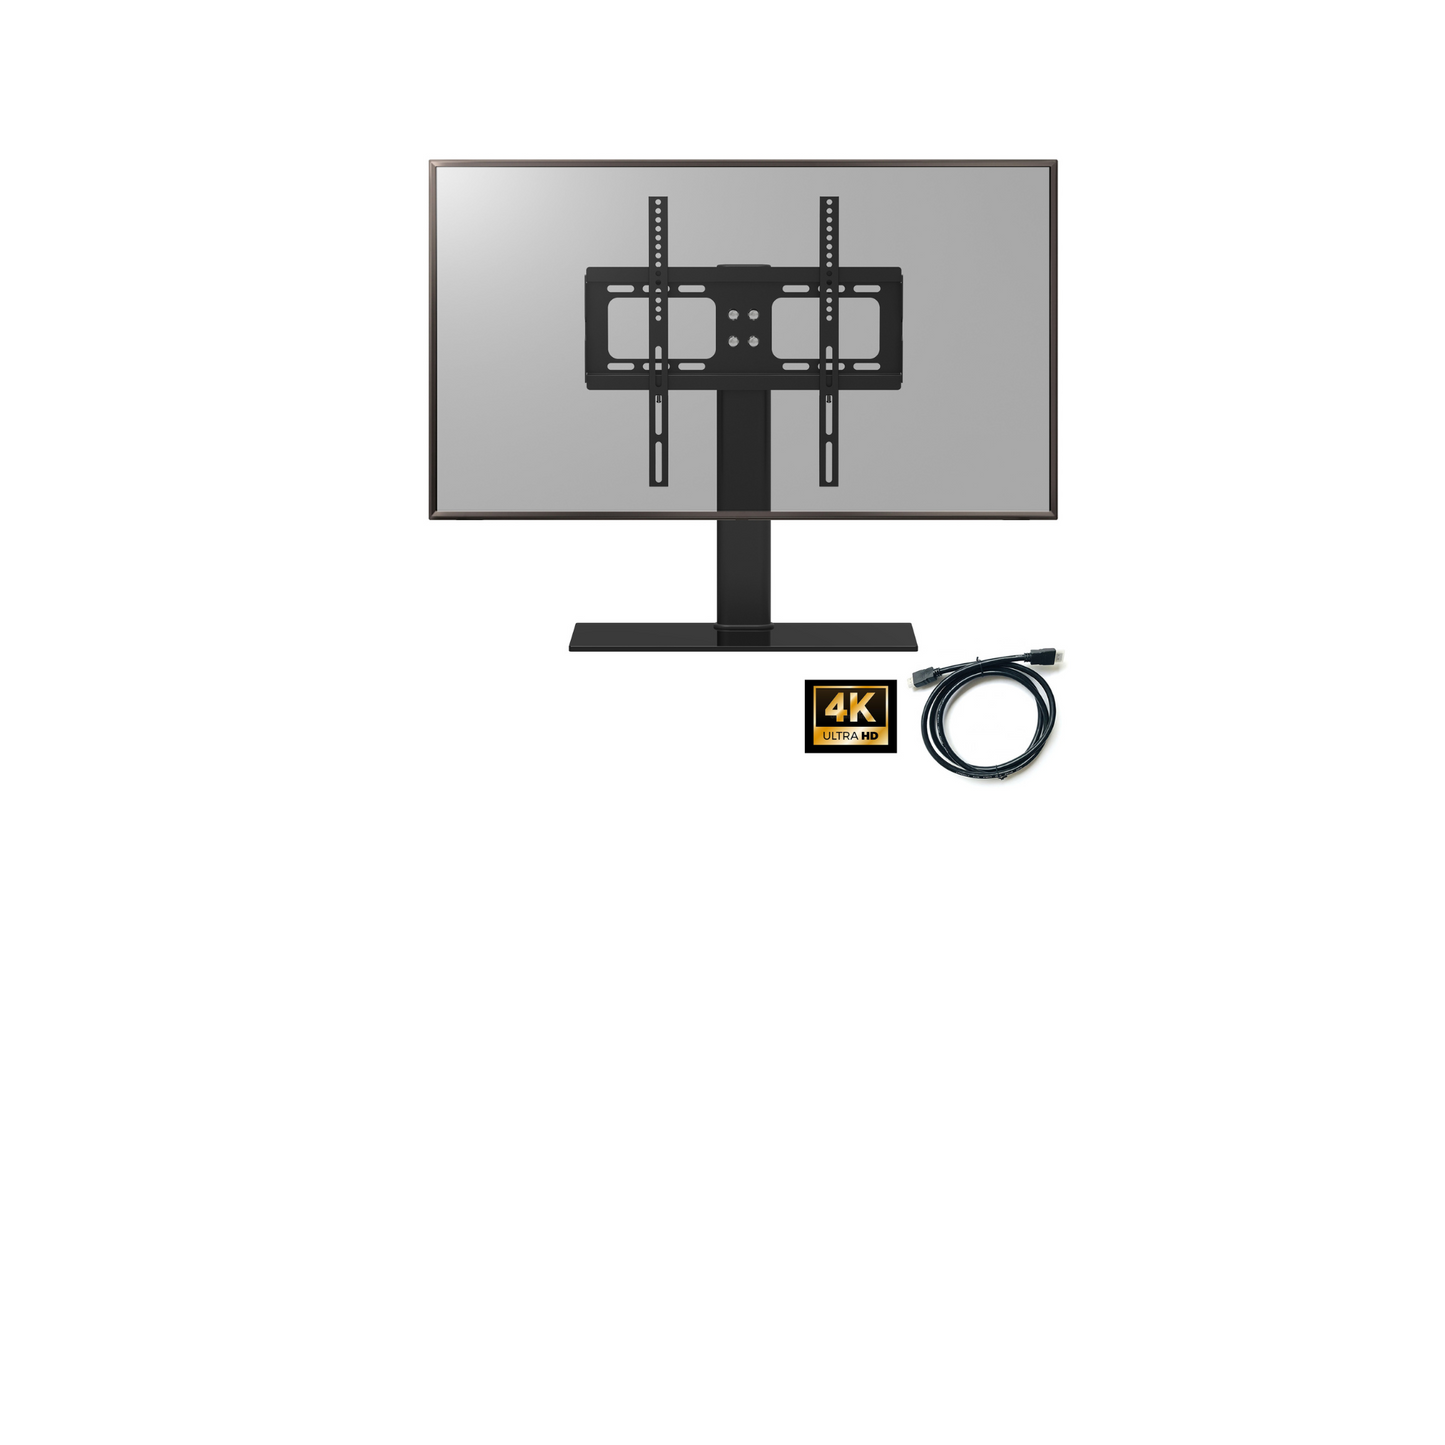 PALMAT Universal Tischständer TV-Ständer mit Halterung 32 - 50 Zoll VERSA 400 x 400